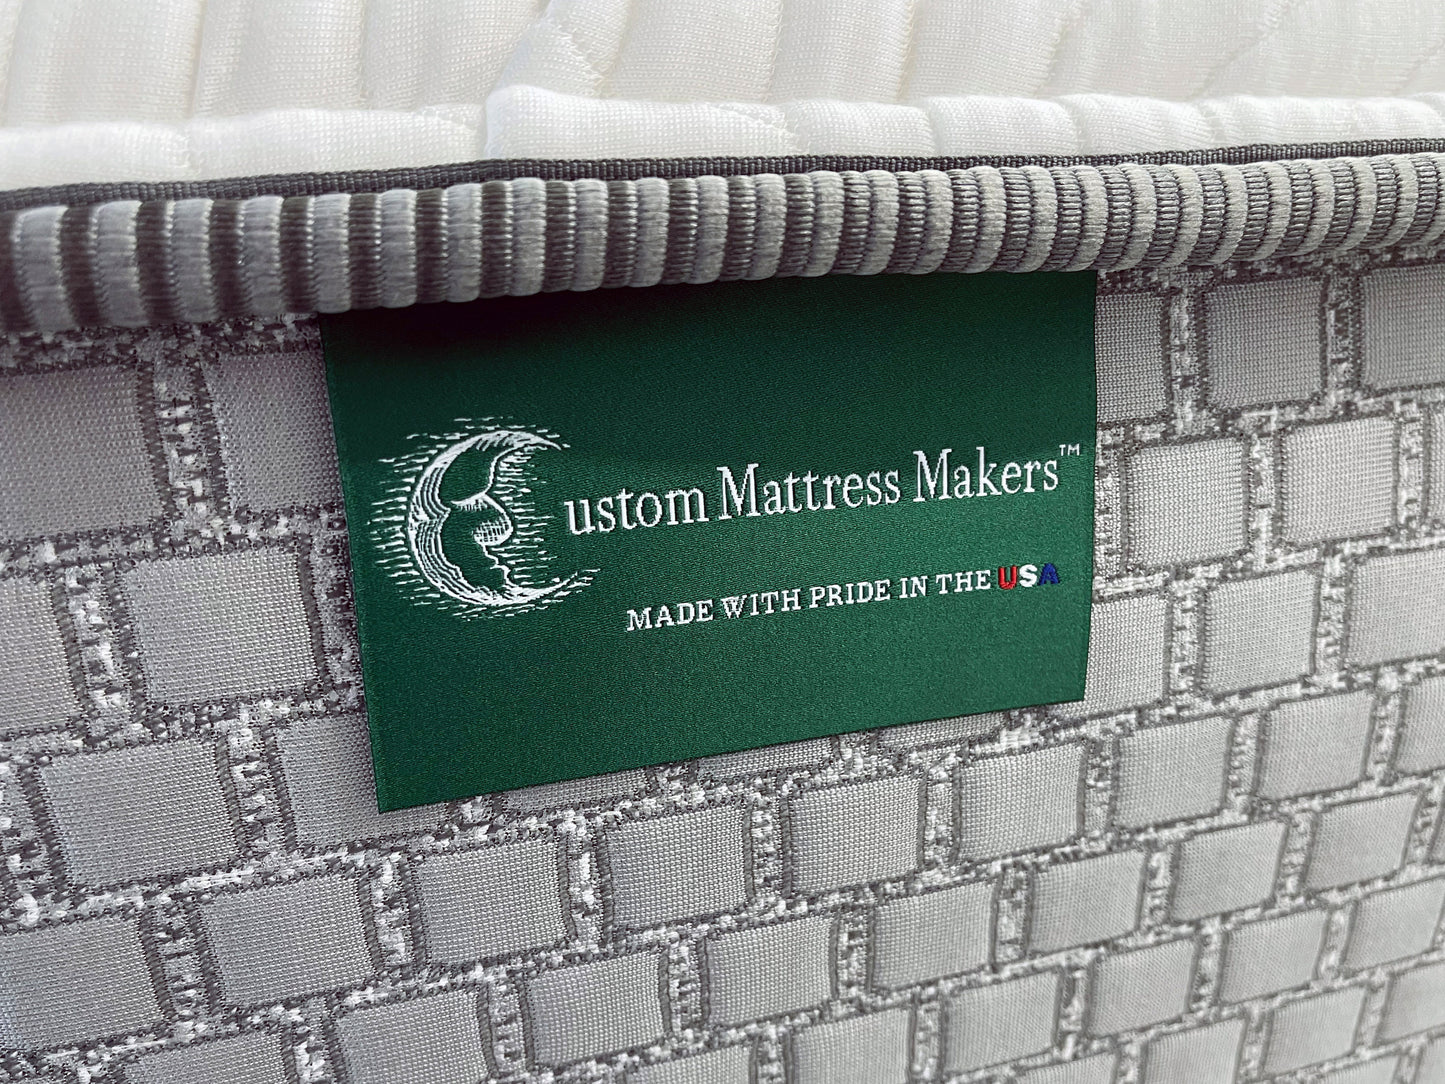 Clearwater Firm, custom mattress